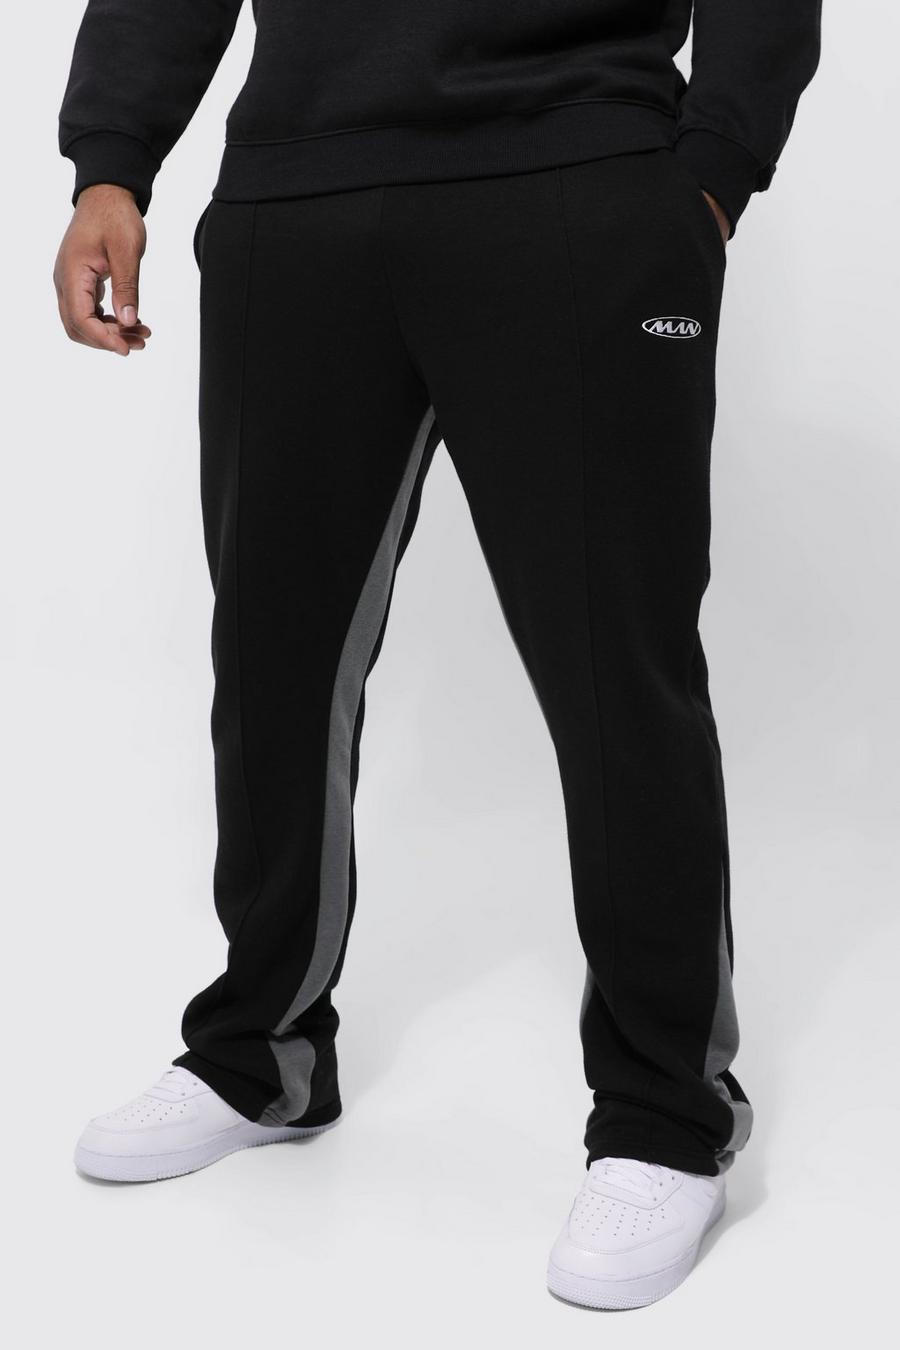 Pantaloni tuta a zampa Plus Size con inserti a contrasto e pieghe sul fondo, Black nero